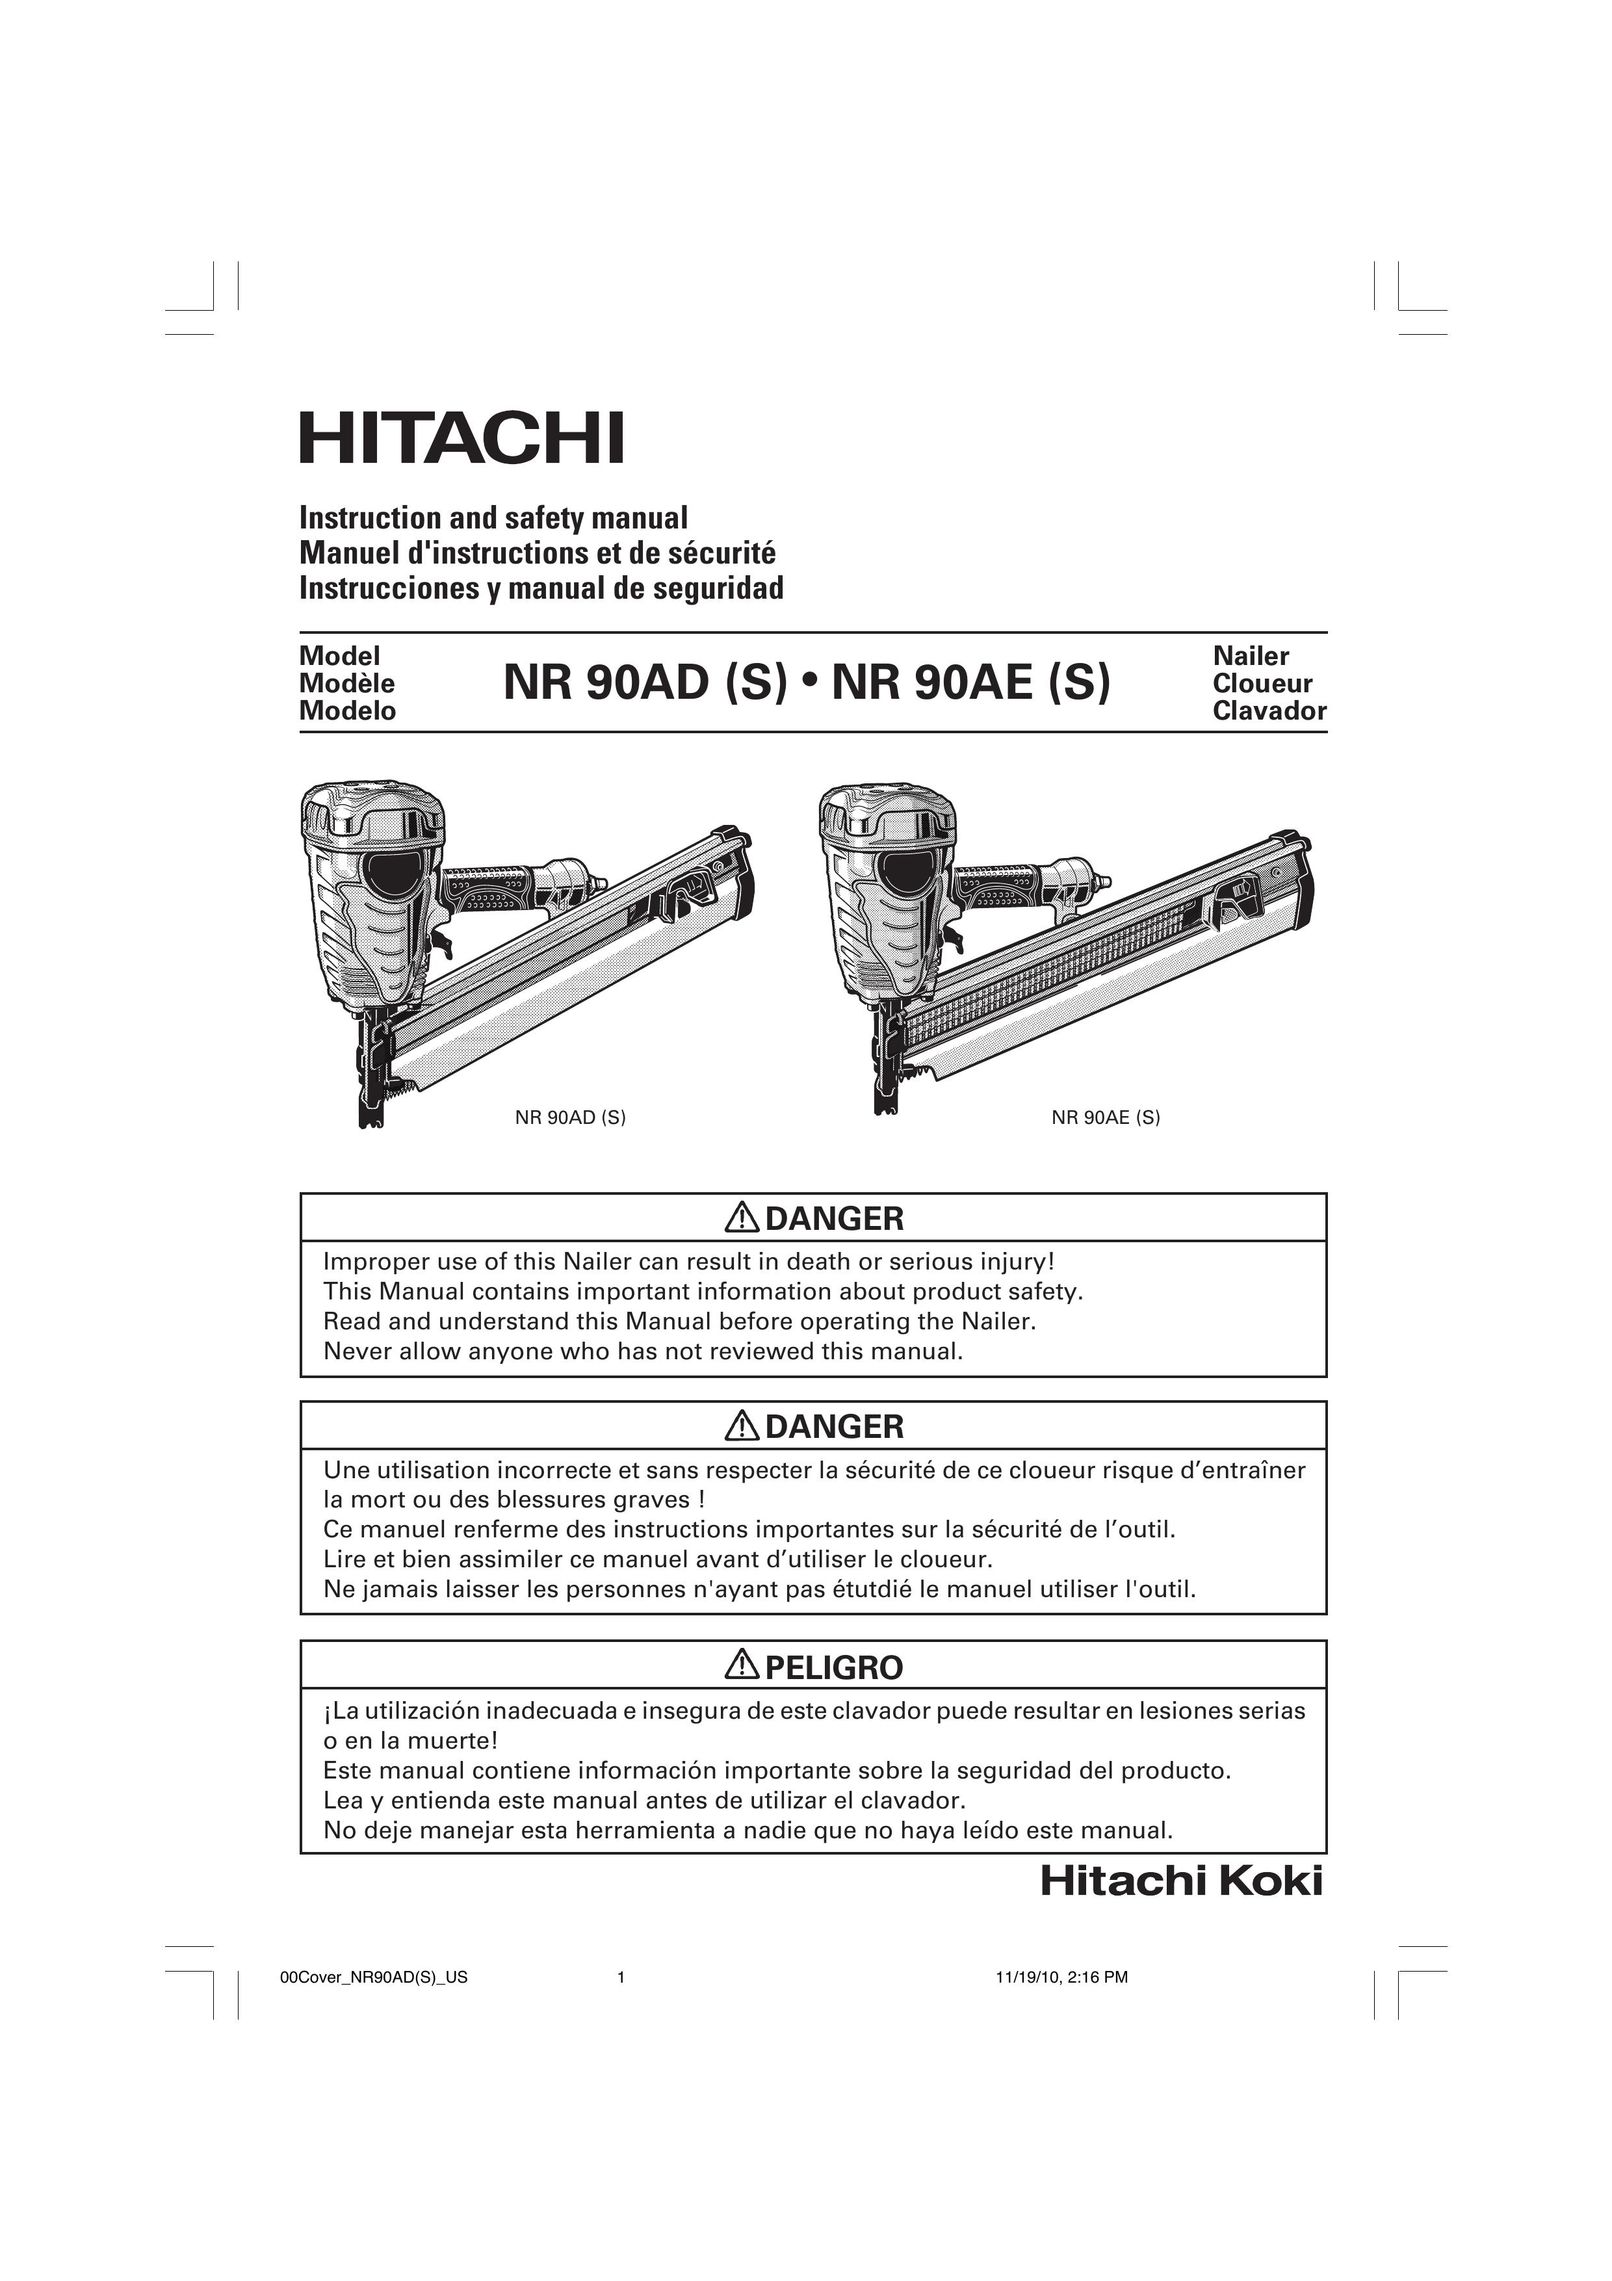 Hitachi NR90AE Nail Gun User Manual